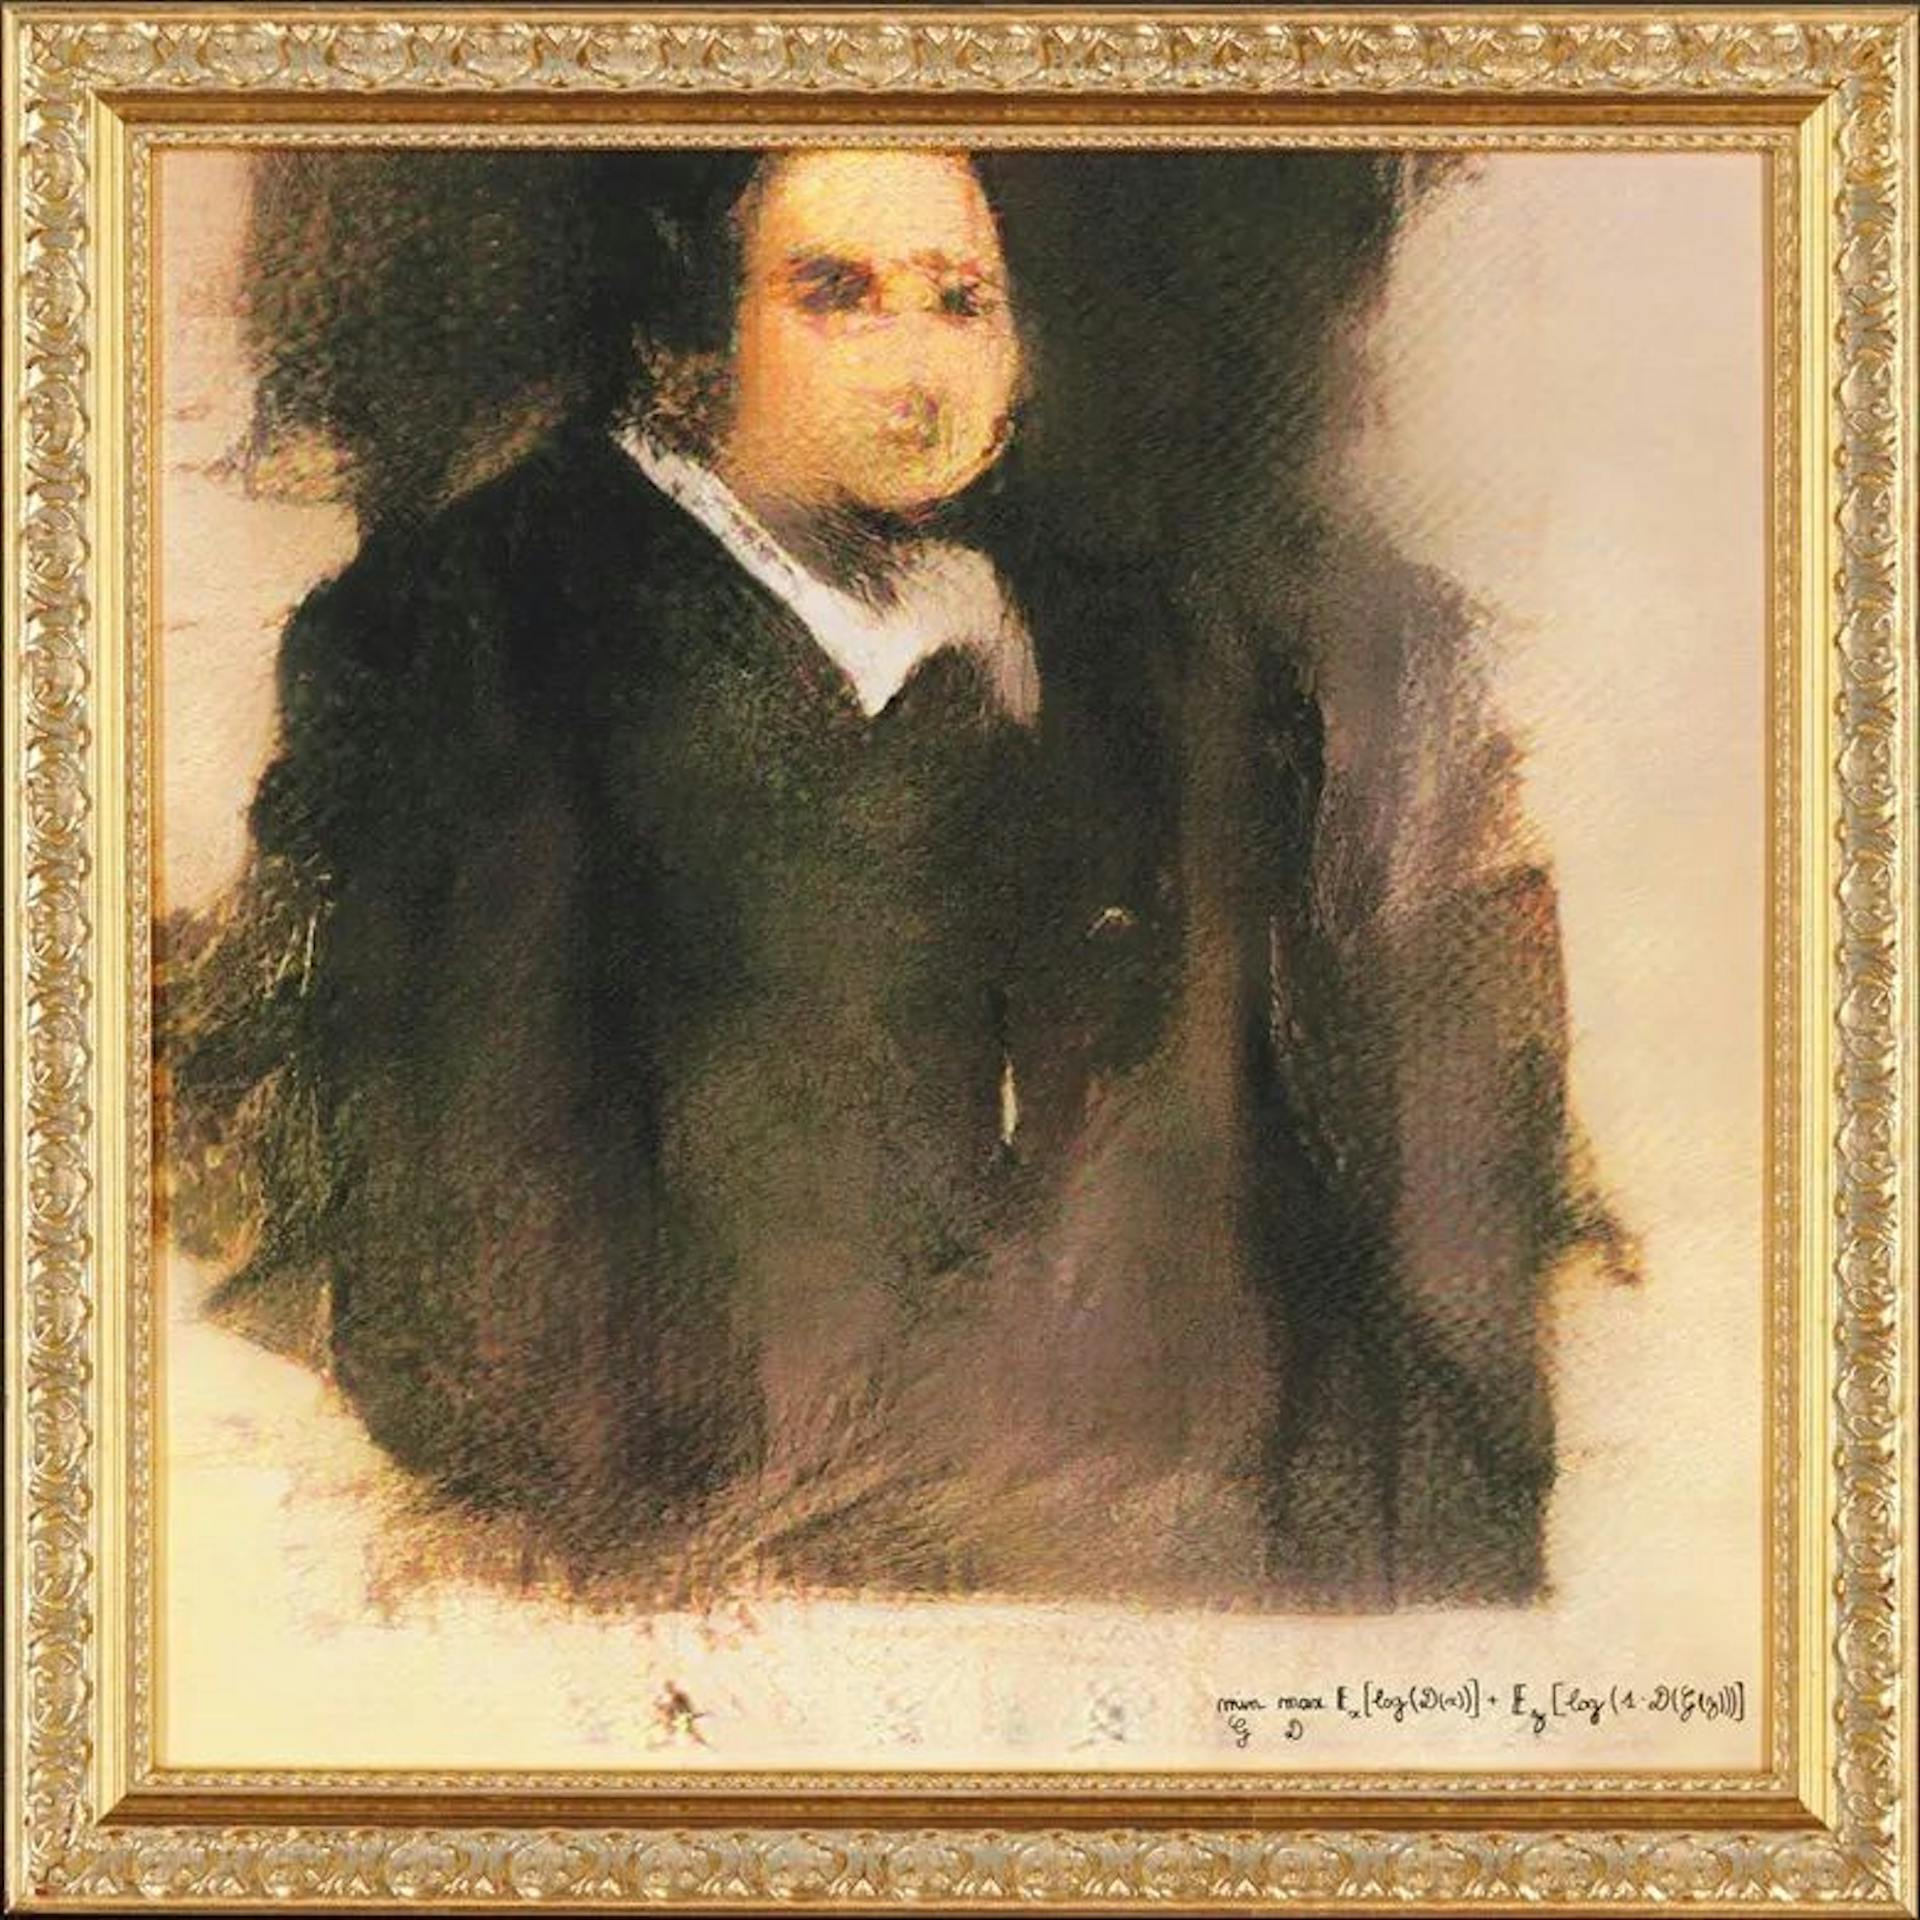 Retrato de Edmond de Belamy, el primer retrato con IA vendido por Christie's por 432.500 dólares. ¿Quién recibe el crédito? ¿Hombre o máquina?